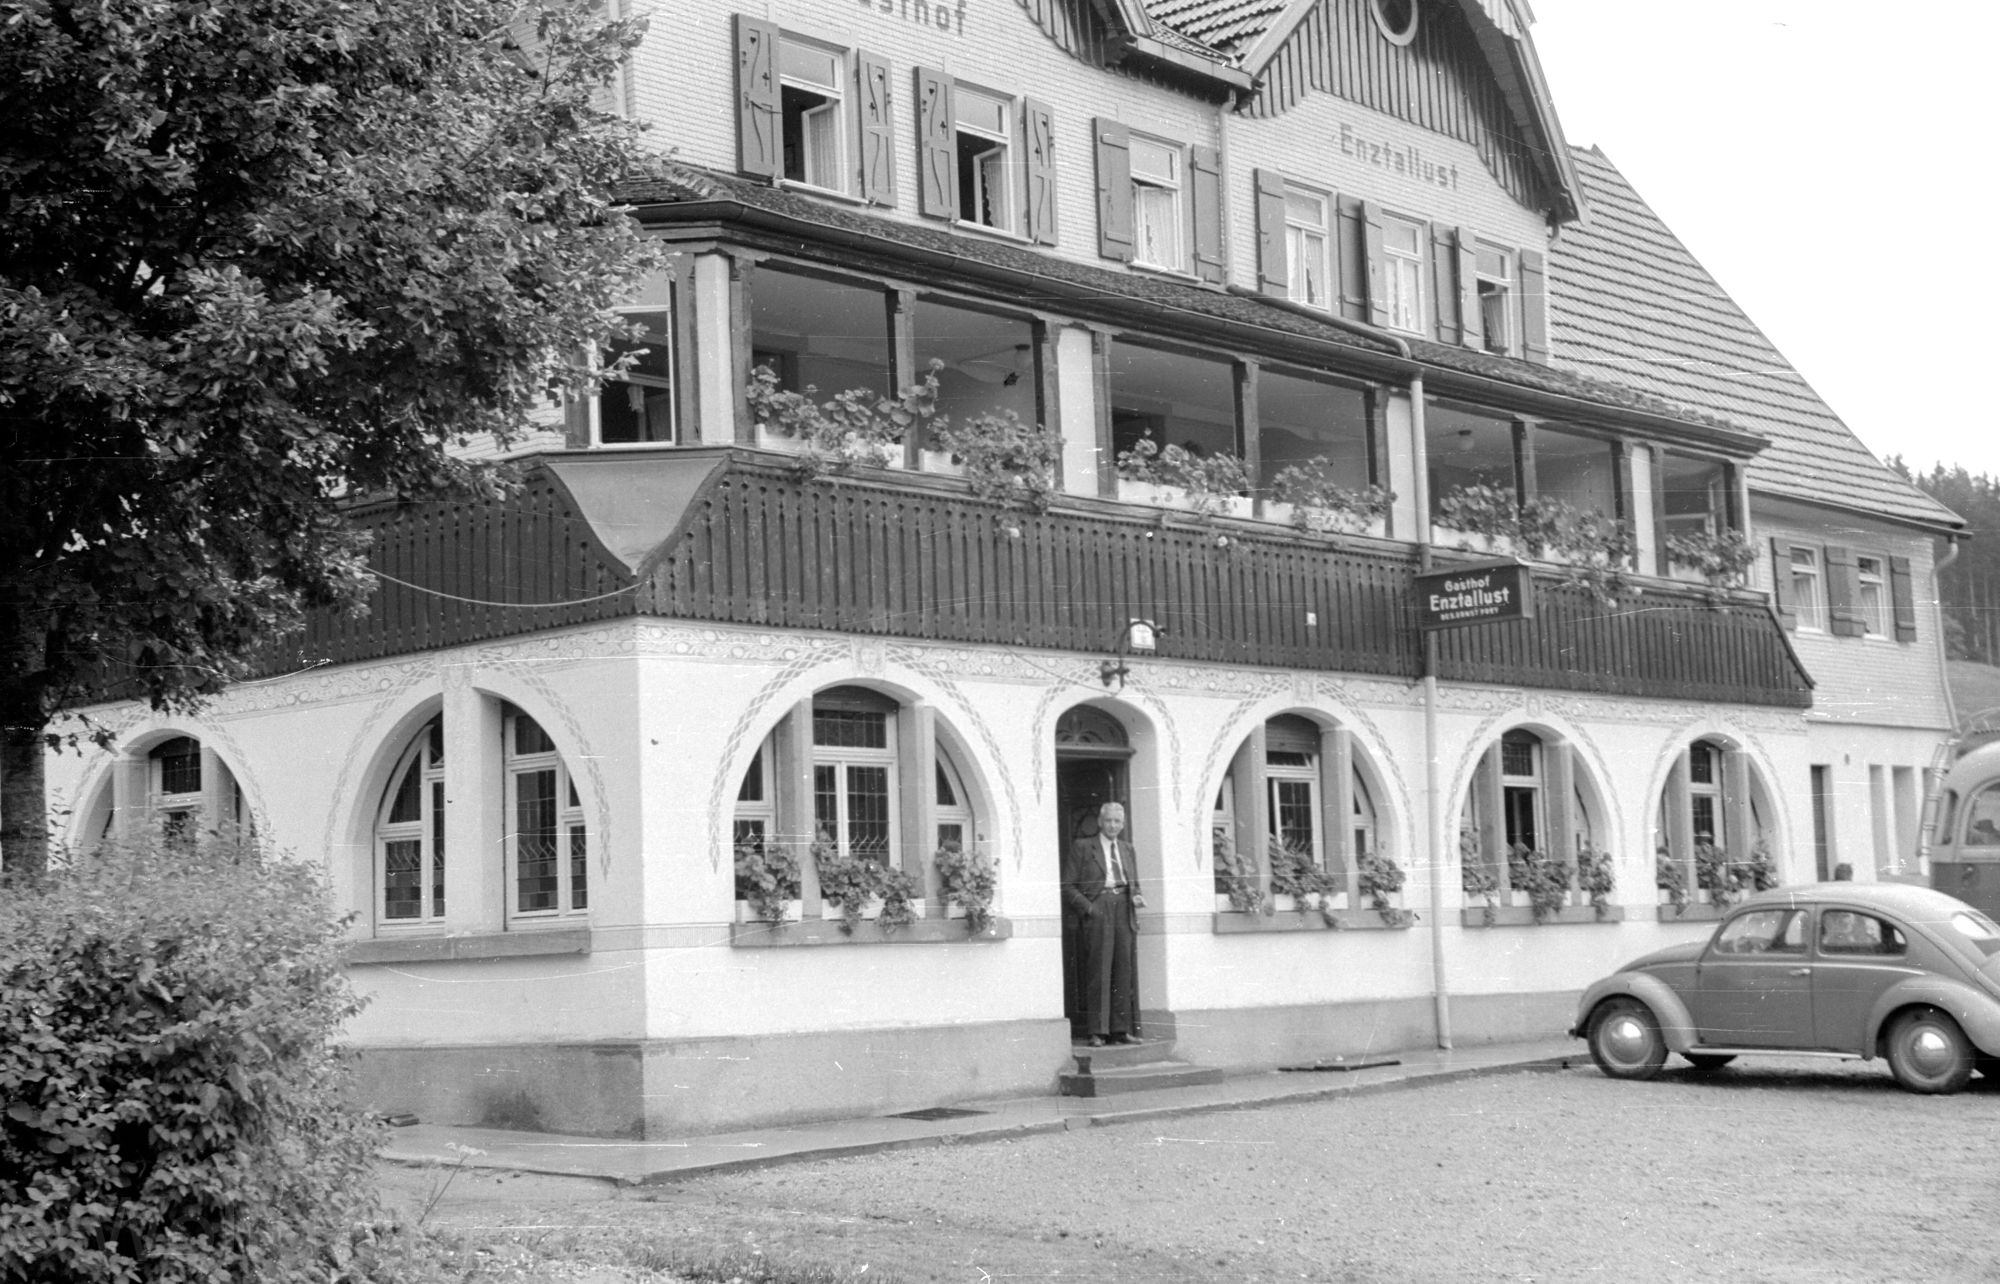 1953: Gasthof Enztallust